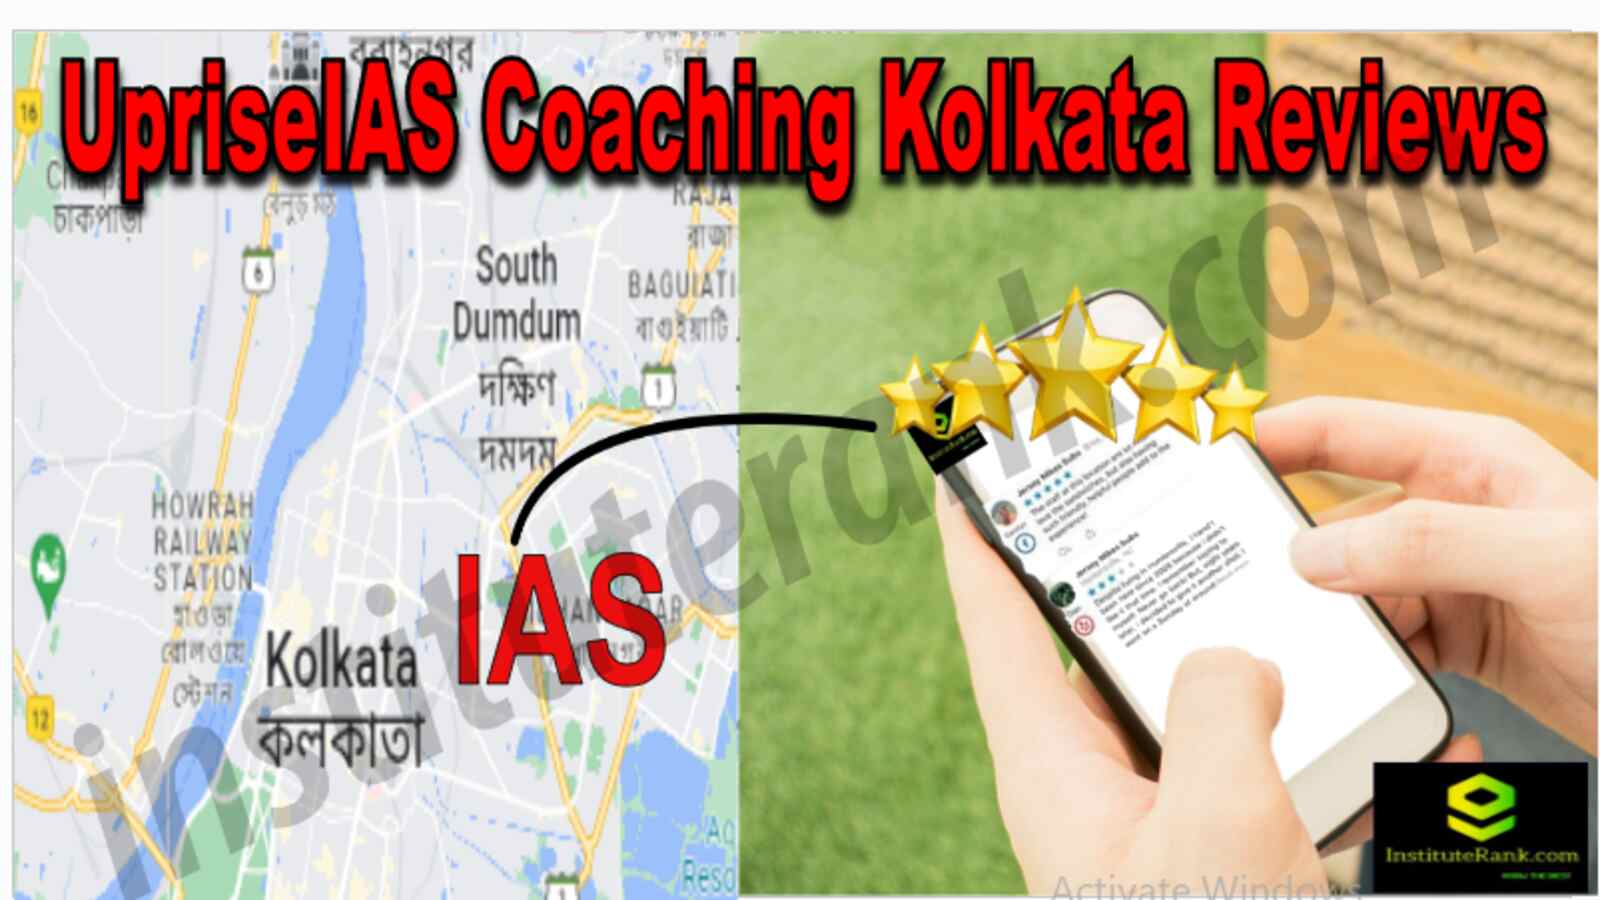 UpriseIAS Coaching Kolkata Reviews